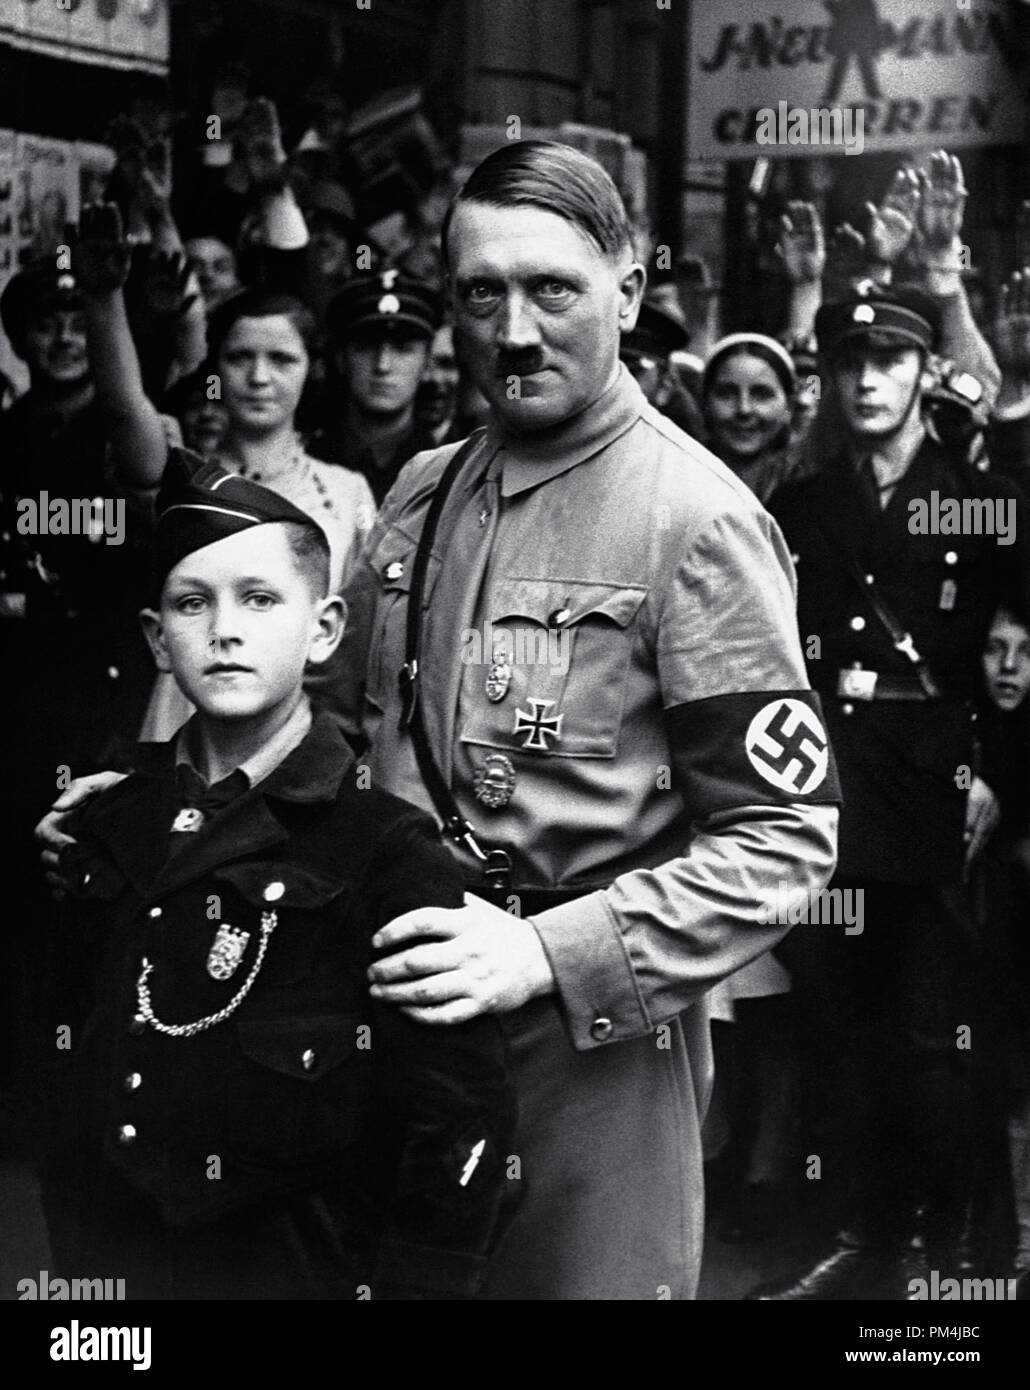 El dictador nazi Adolf Hitler posa con un joven miembro de la juventud nazi, circa 1934 Archivo de referencia # 1003 651tha Foto de stock